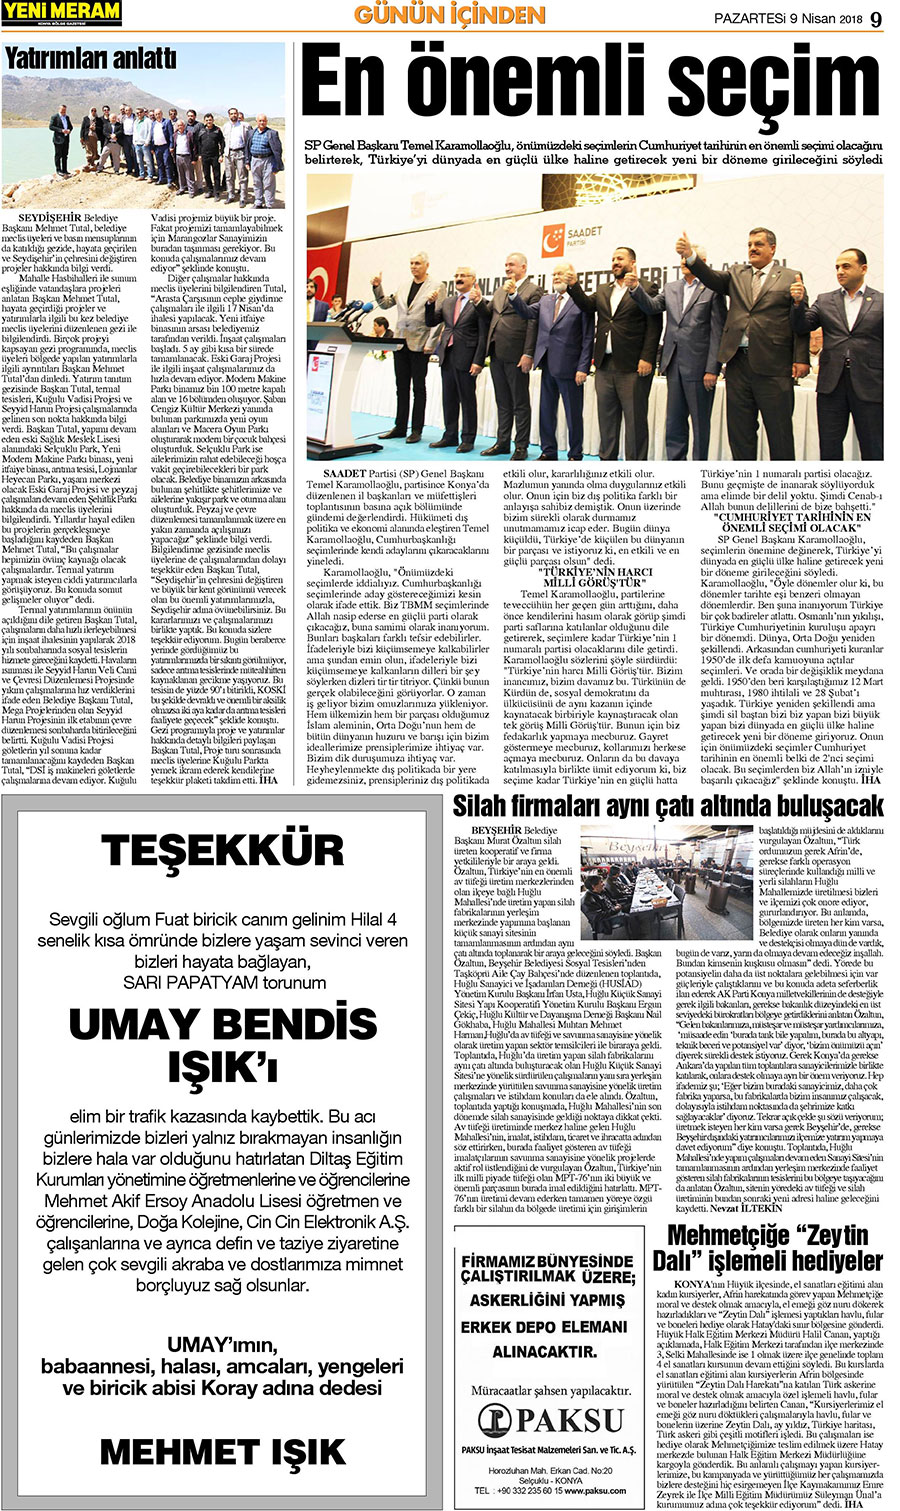 9 Nisan 2018 Yeni Meram Gazetesi